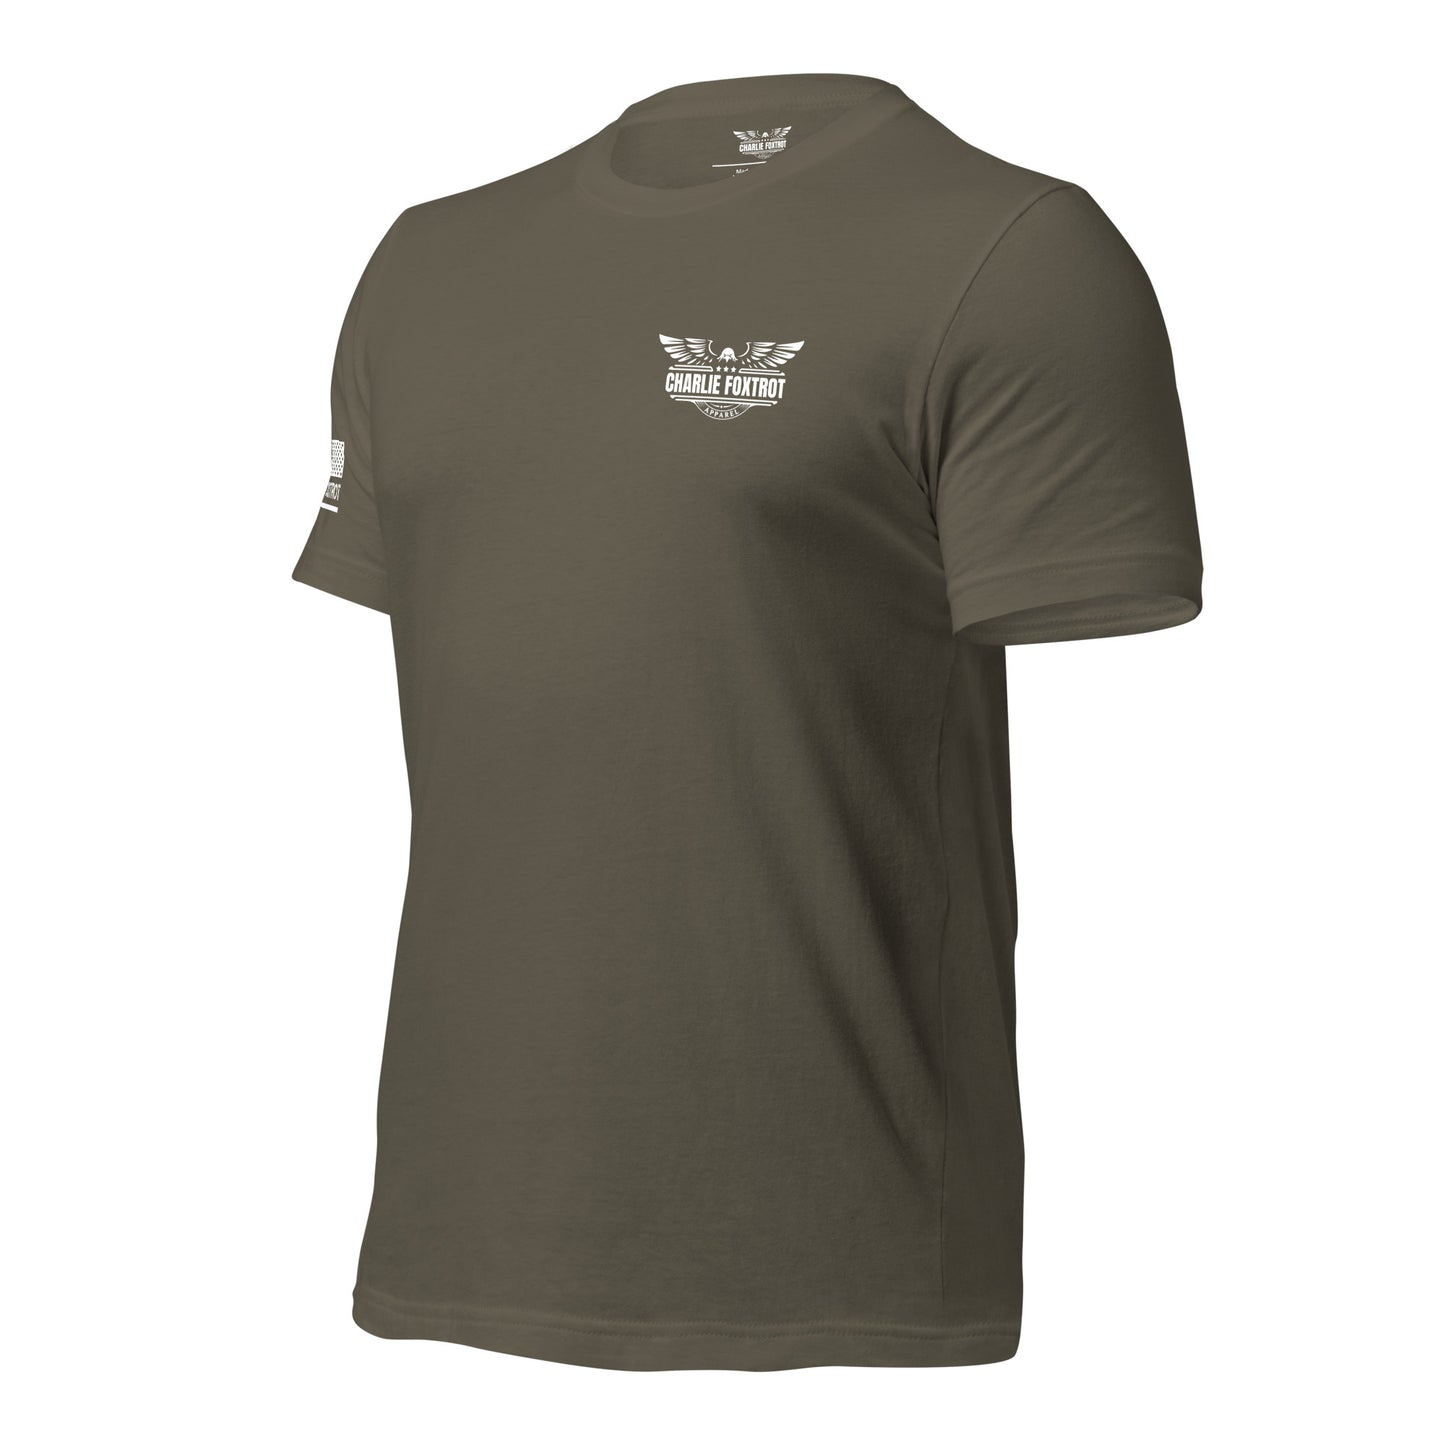 United States Marine Unisex T-shirt